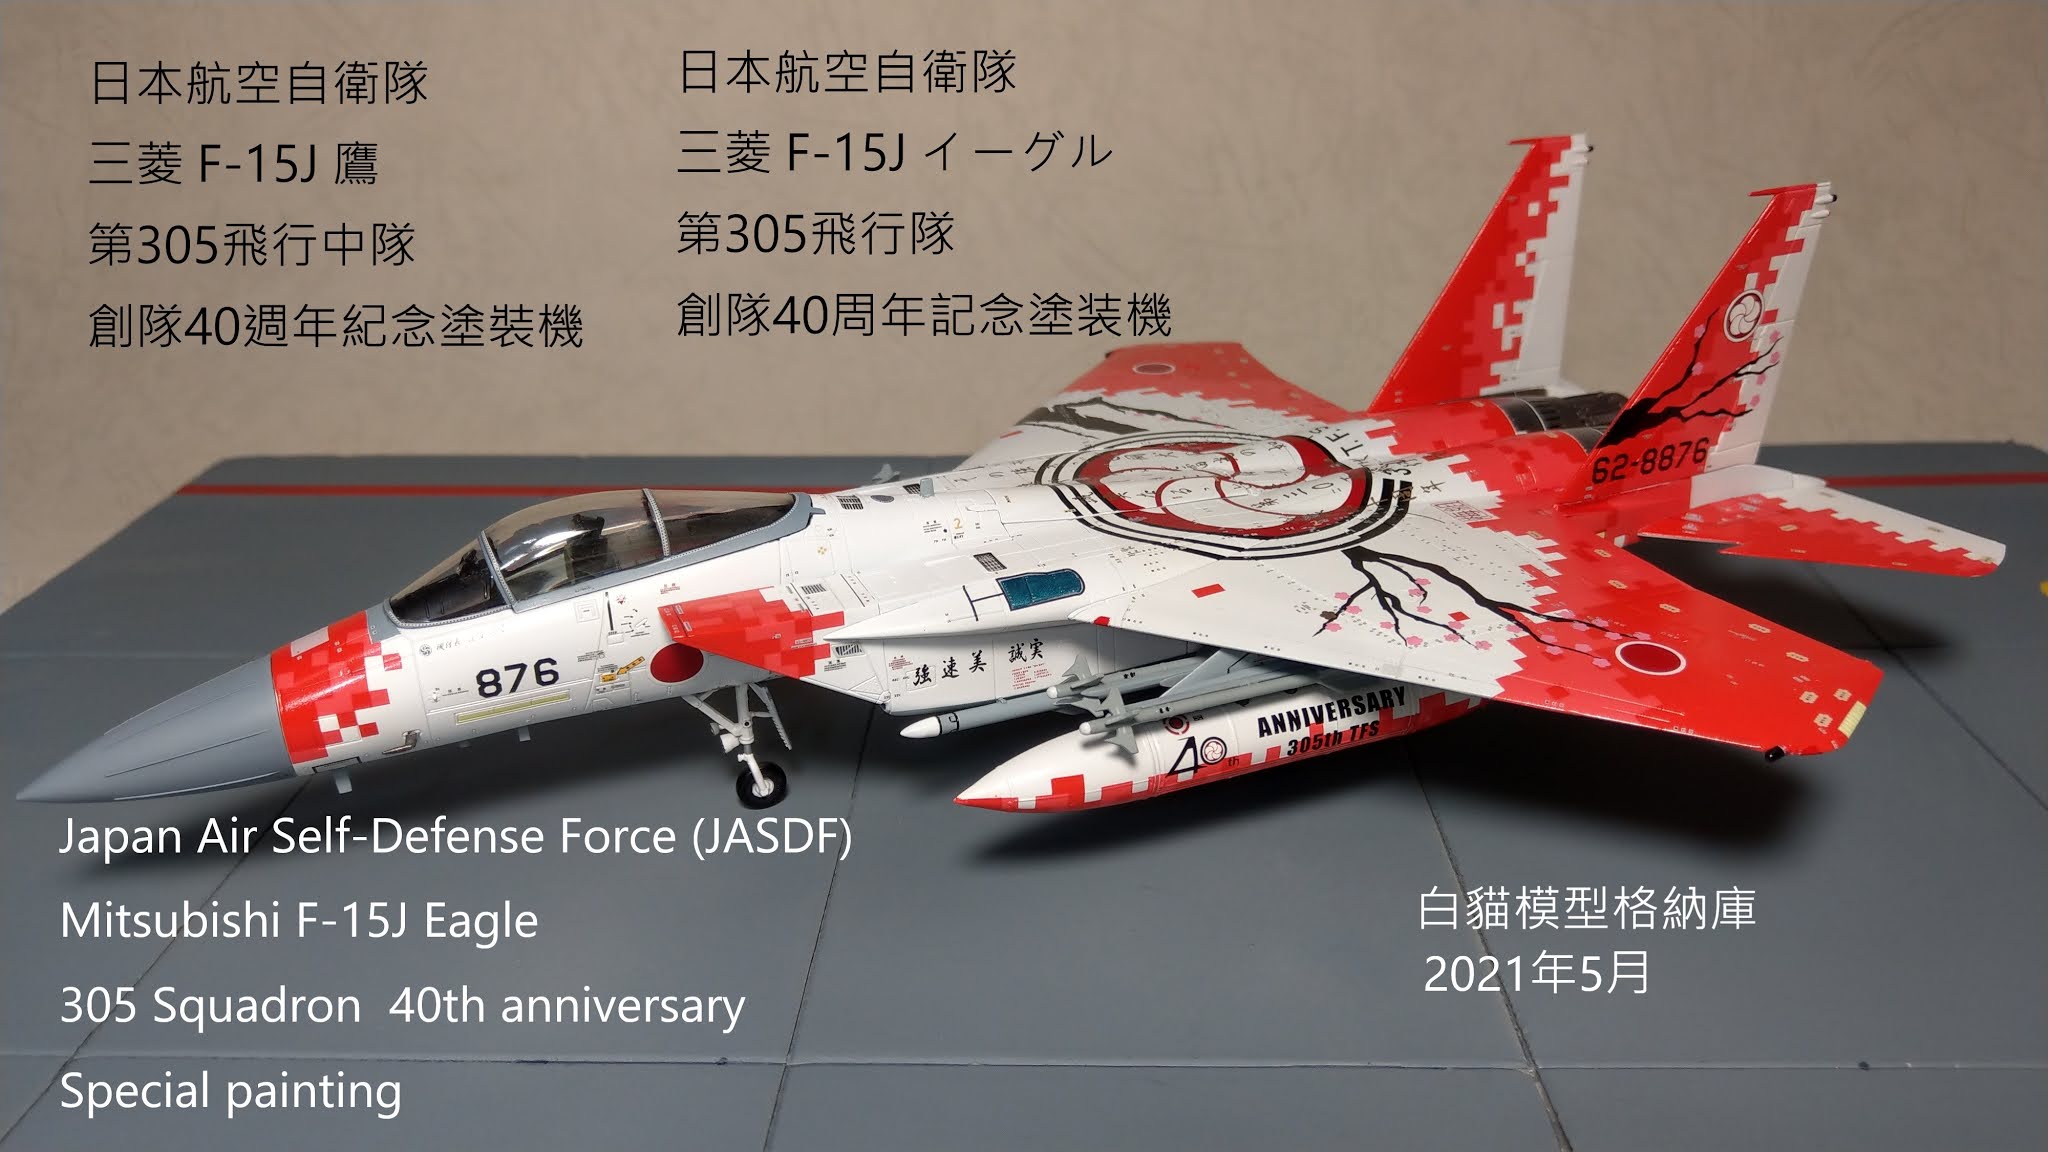 白貓模型格納庫: 日本航空自衛隊F-15J 第305飛行中隊創隊四十週年紀念 